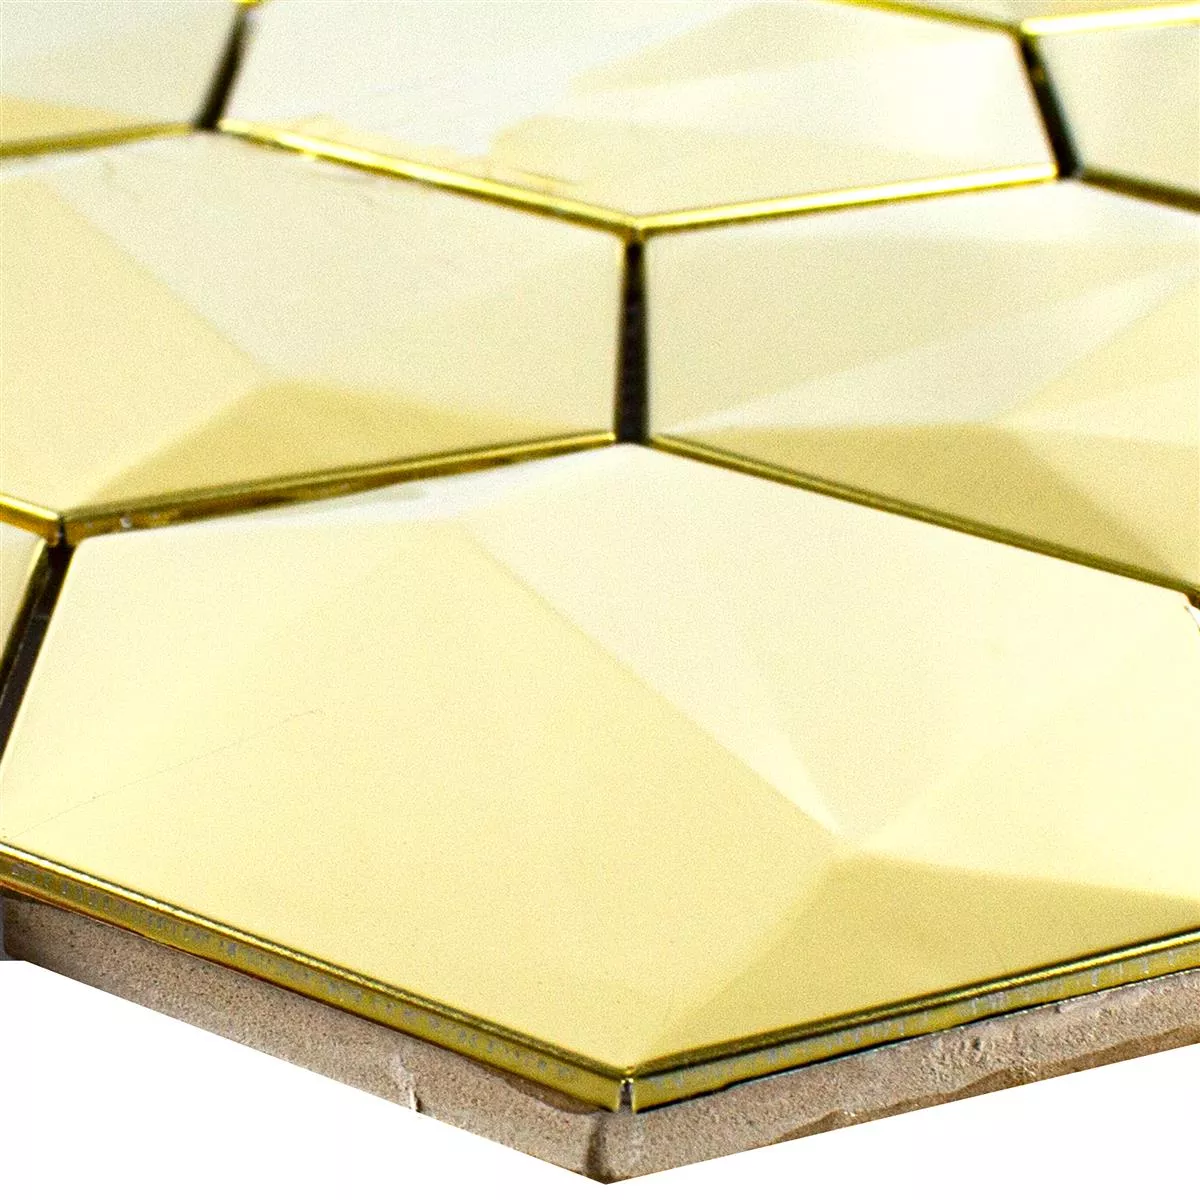 Prov Rostfritt Stål Mosaik Durango Hexagon 3D Guld